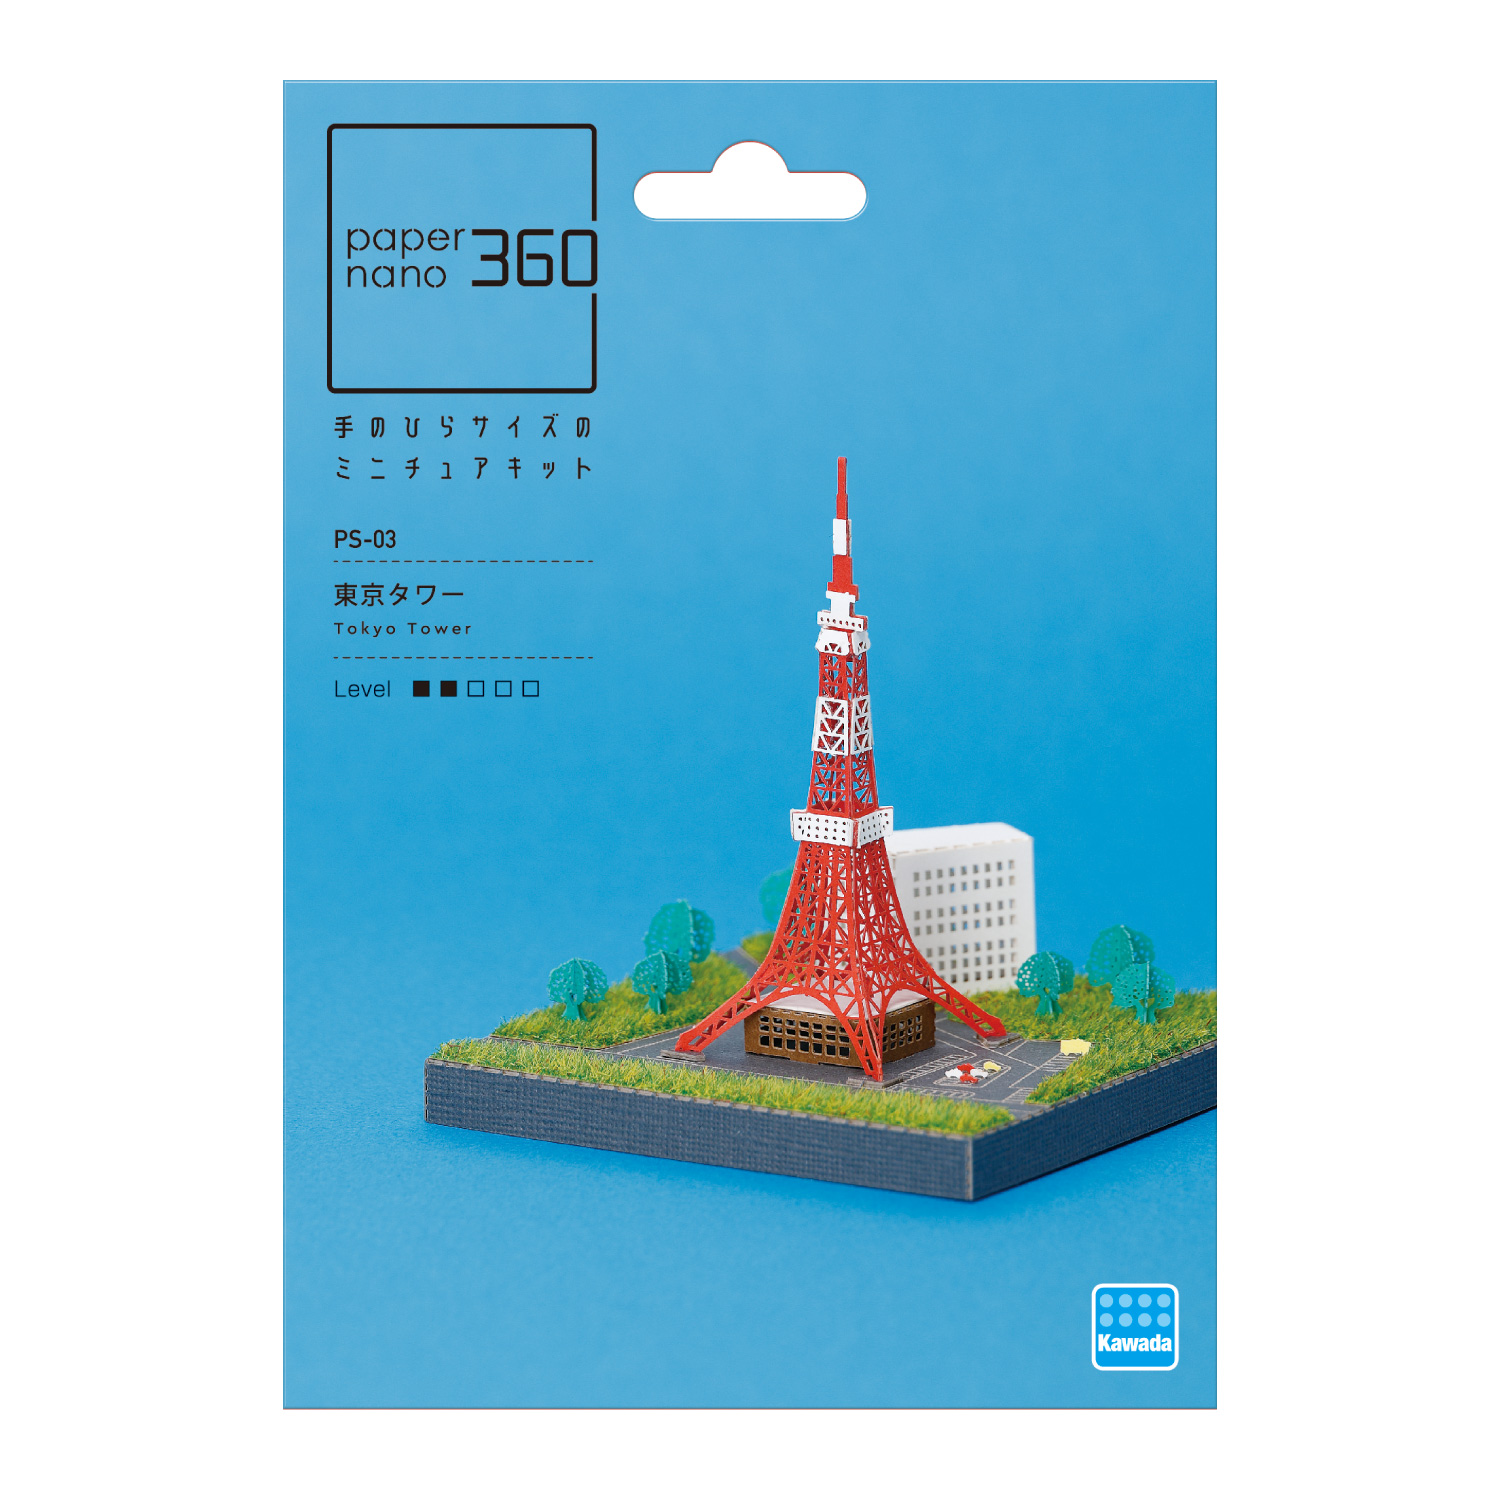 東京タワー | ペーパーナノ® | Kawada Official Original Brand Site